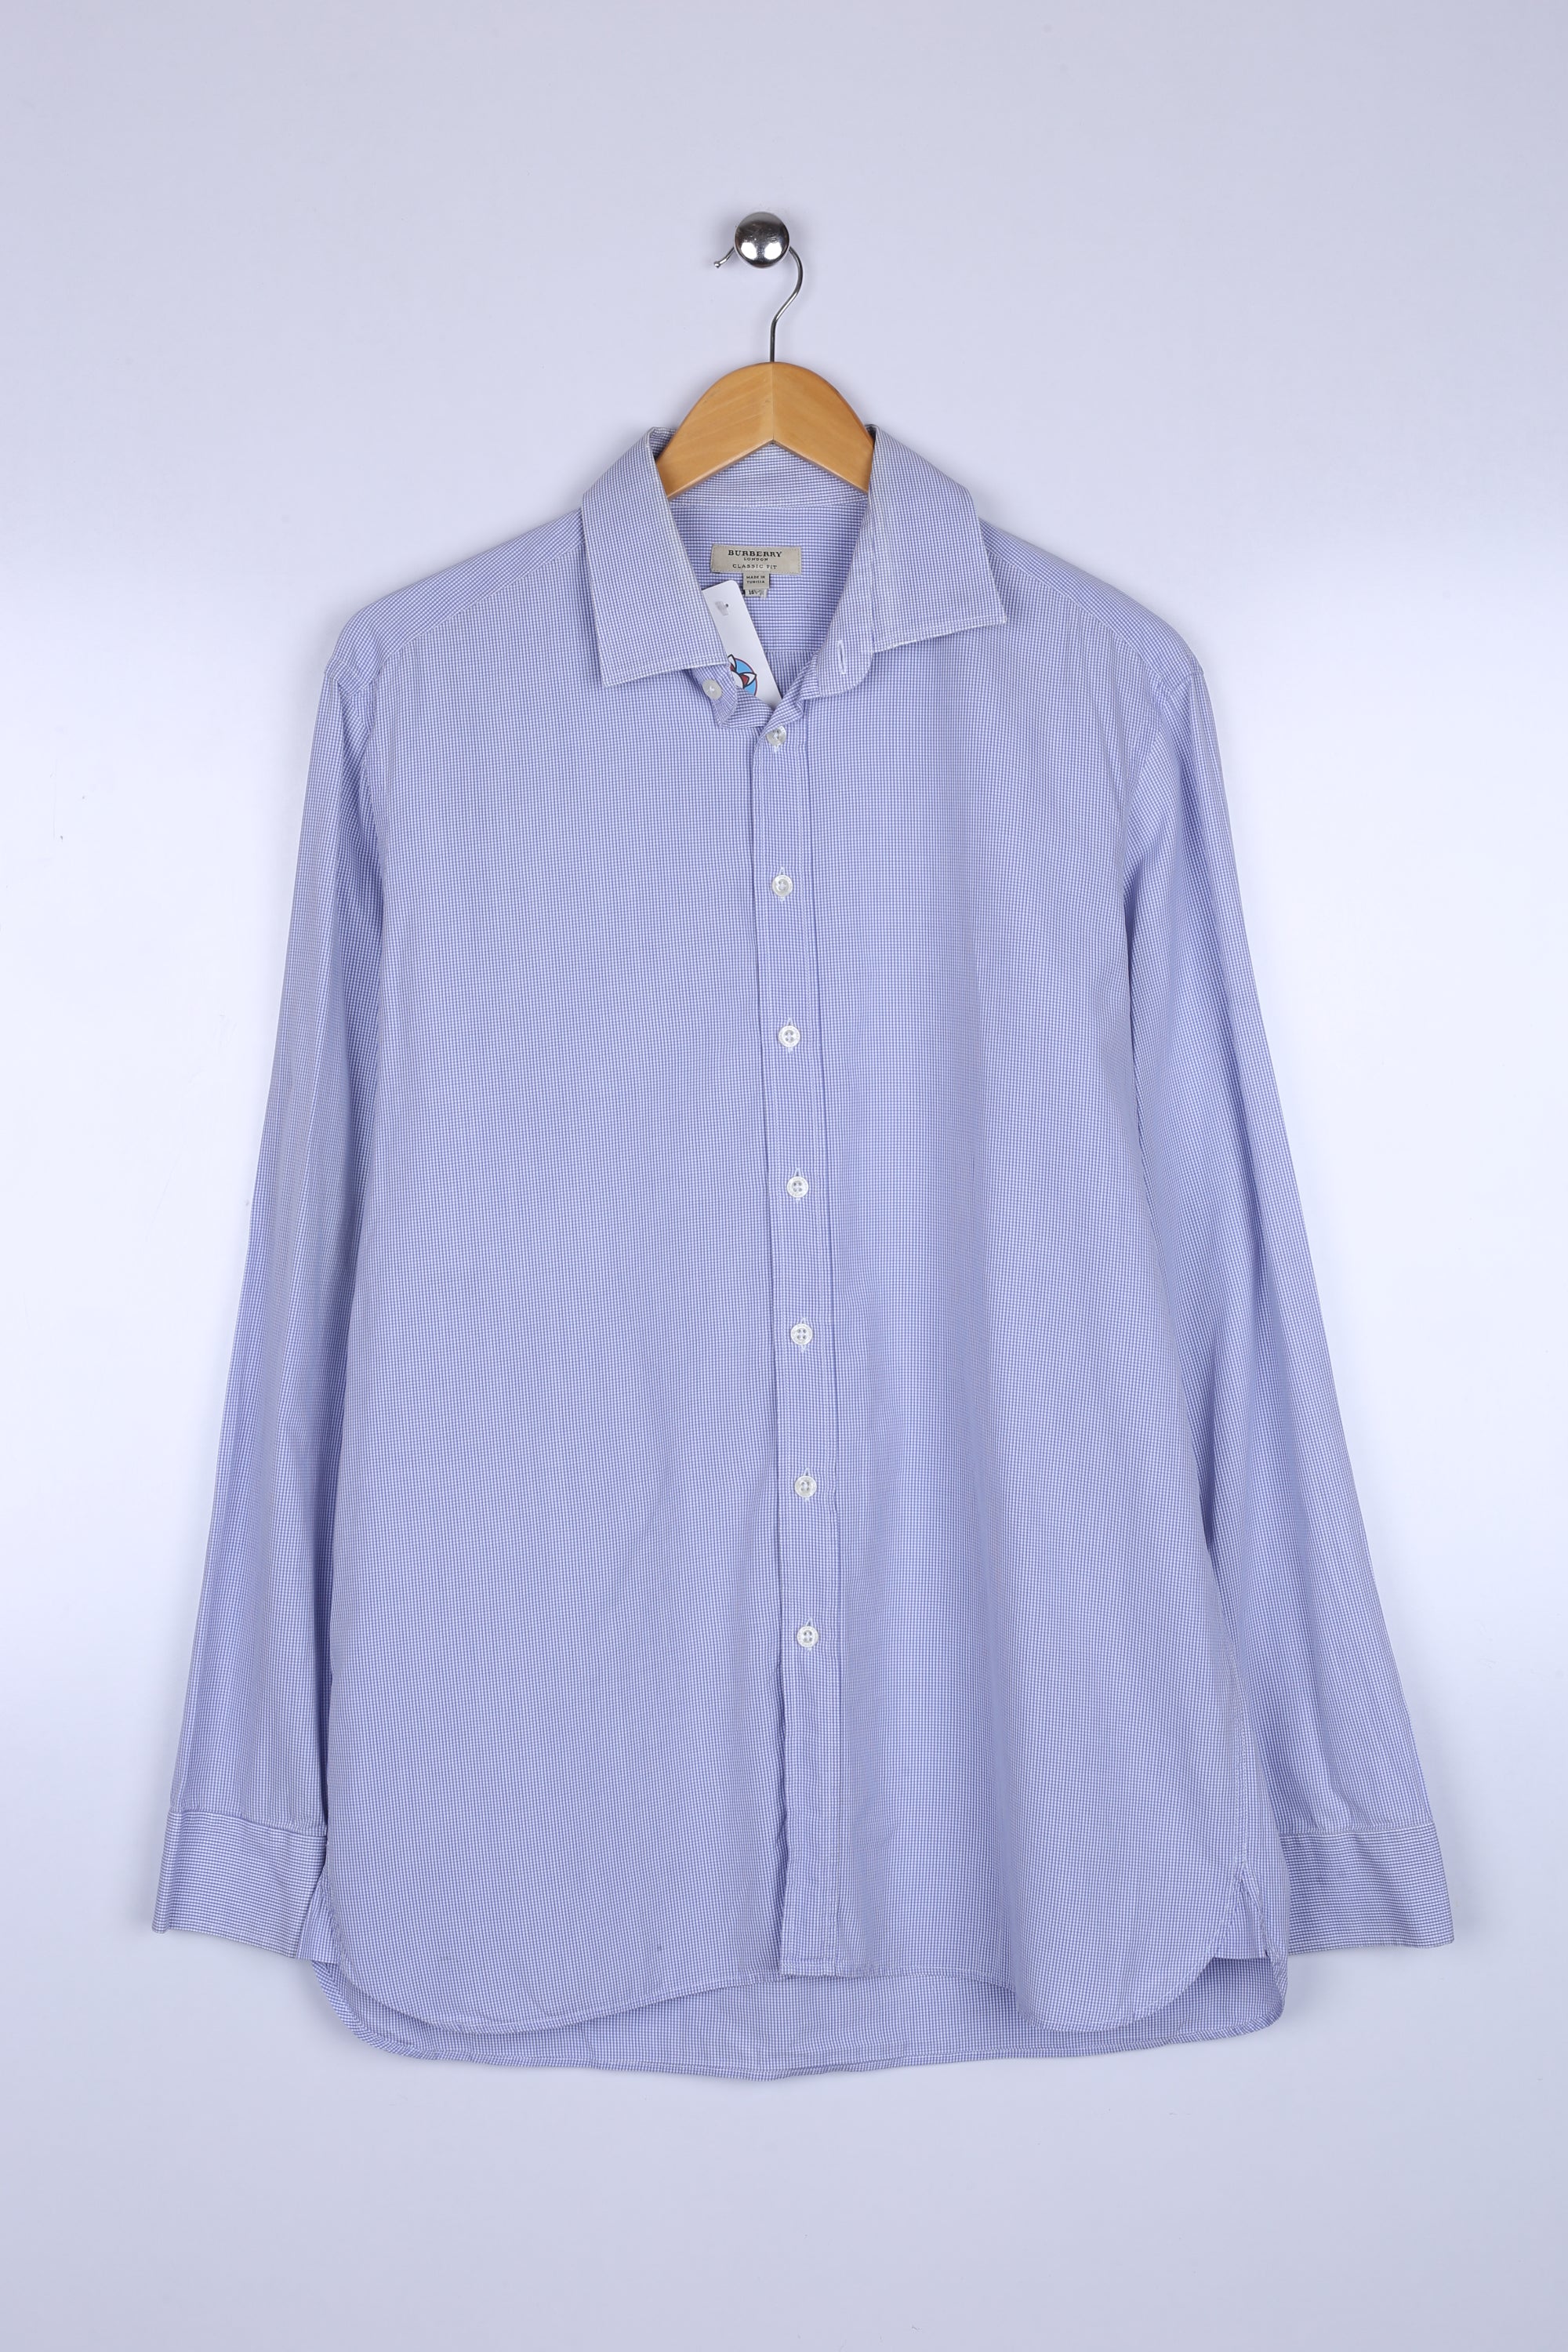 Vintage Burberry Shirt Sky Blue Checkered